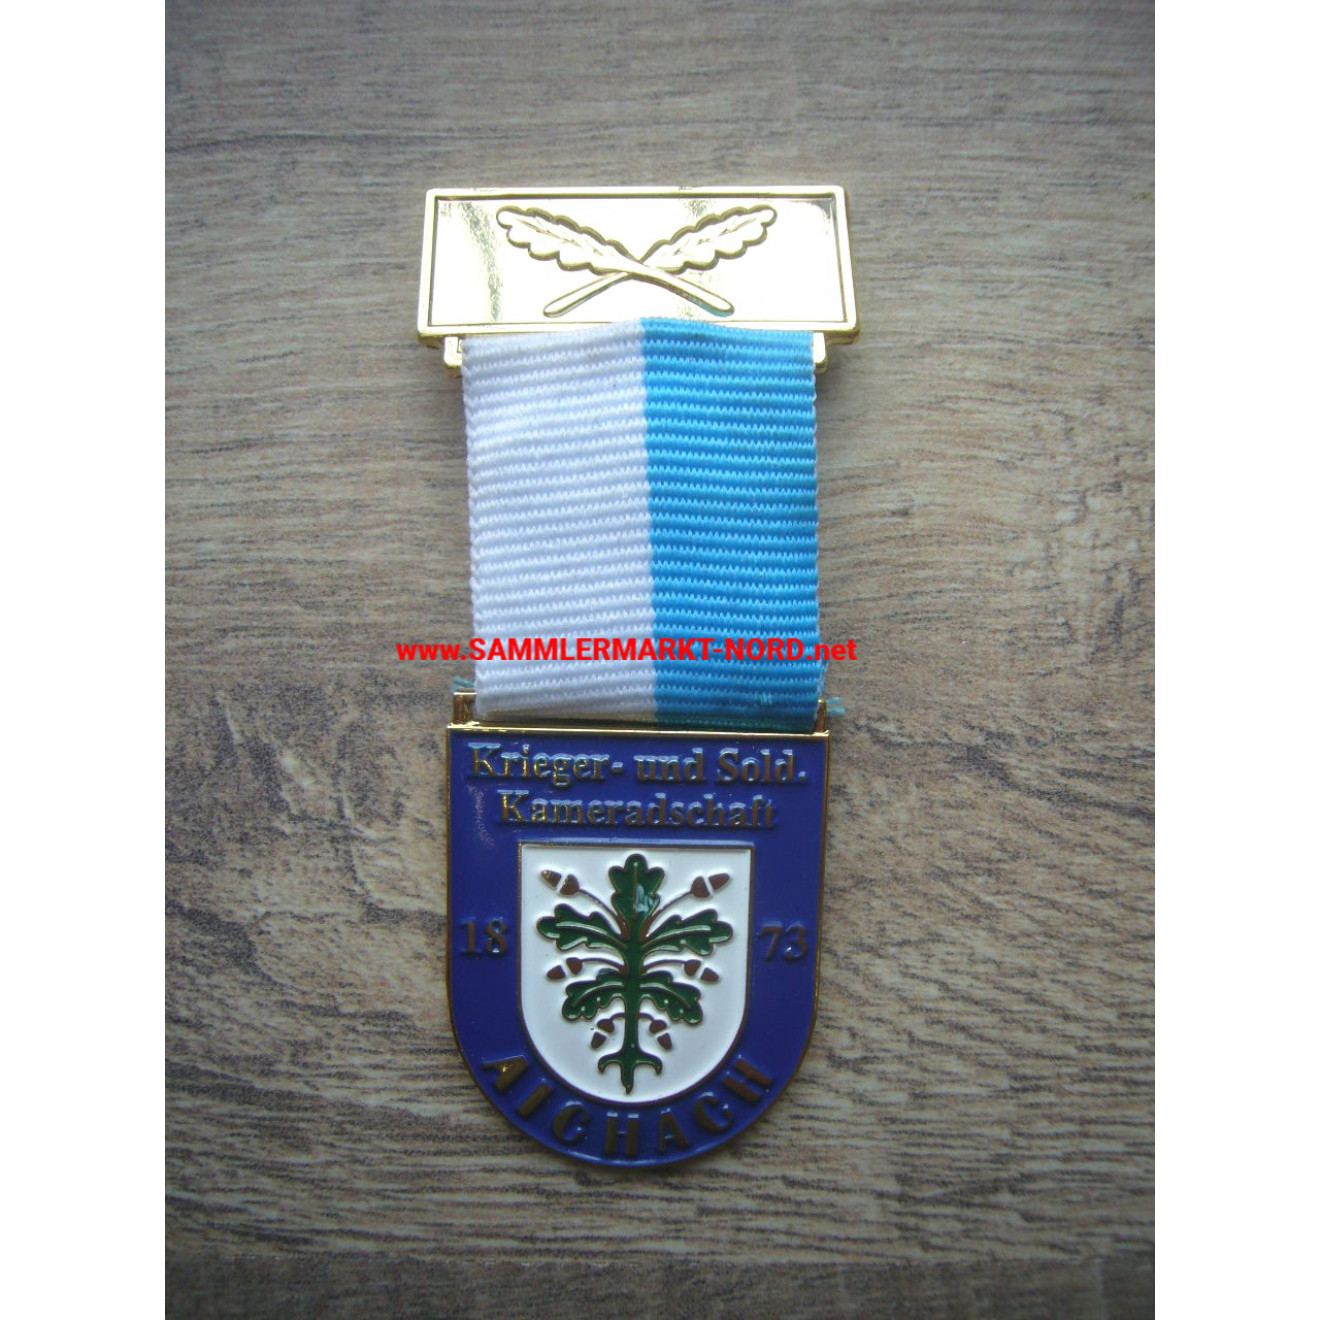 Soldier Comradeship Aichach 1873 - Badge